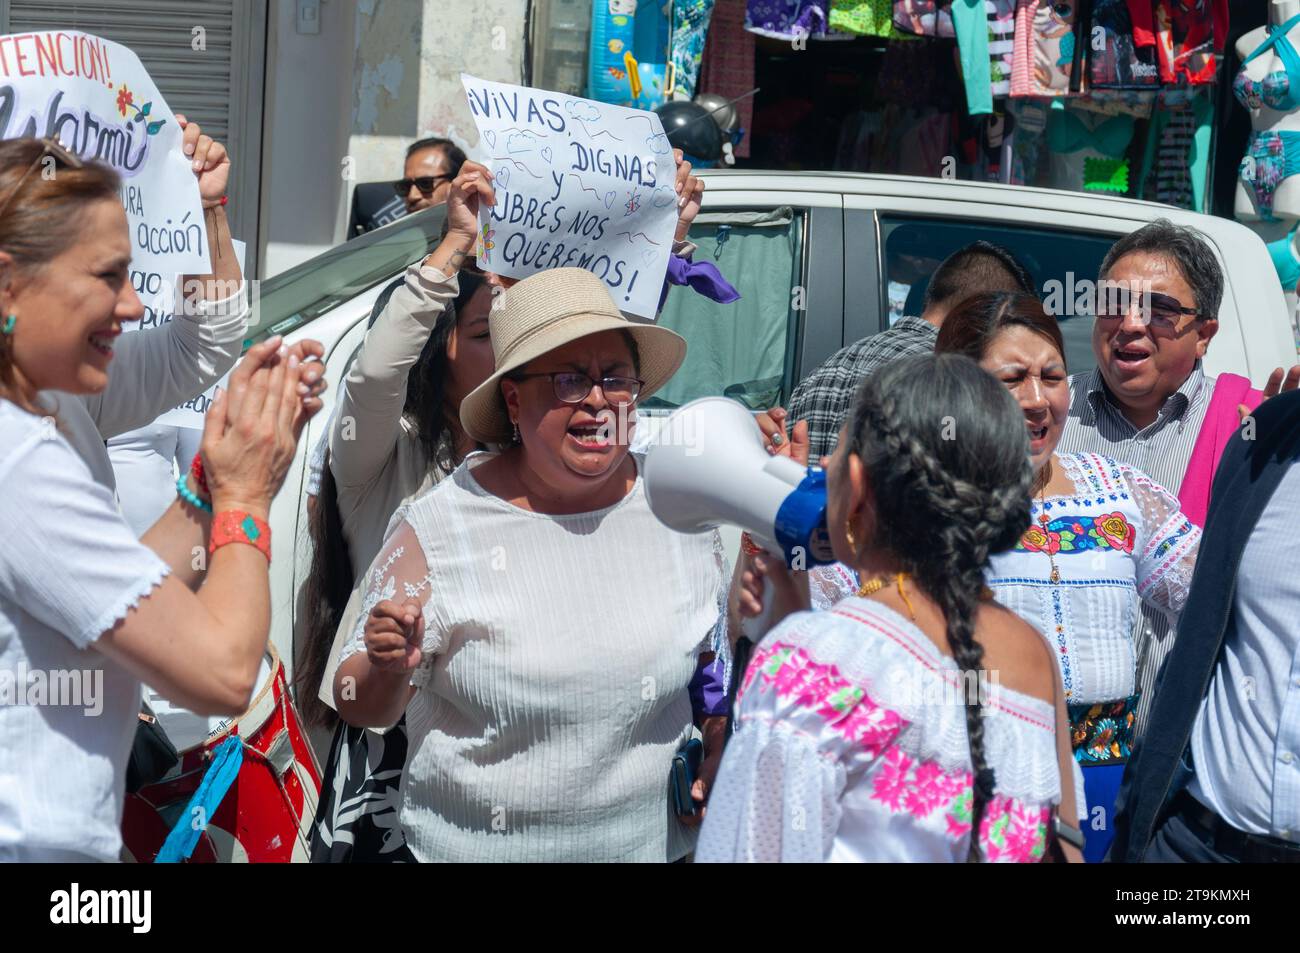 dos mujeres se enfrentaron en una manifestación feminista de mujeres indígenas maltratadas. manifestación contra el racismo. Contra el racismo y la violencia de género. Foto de stock